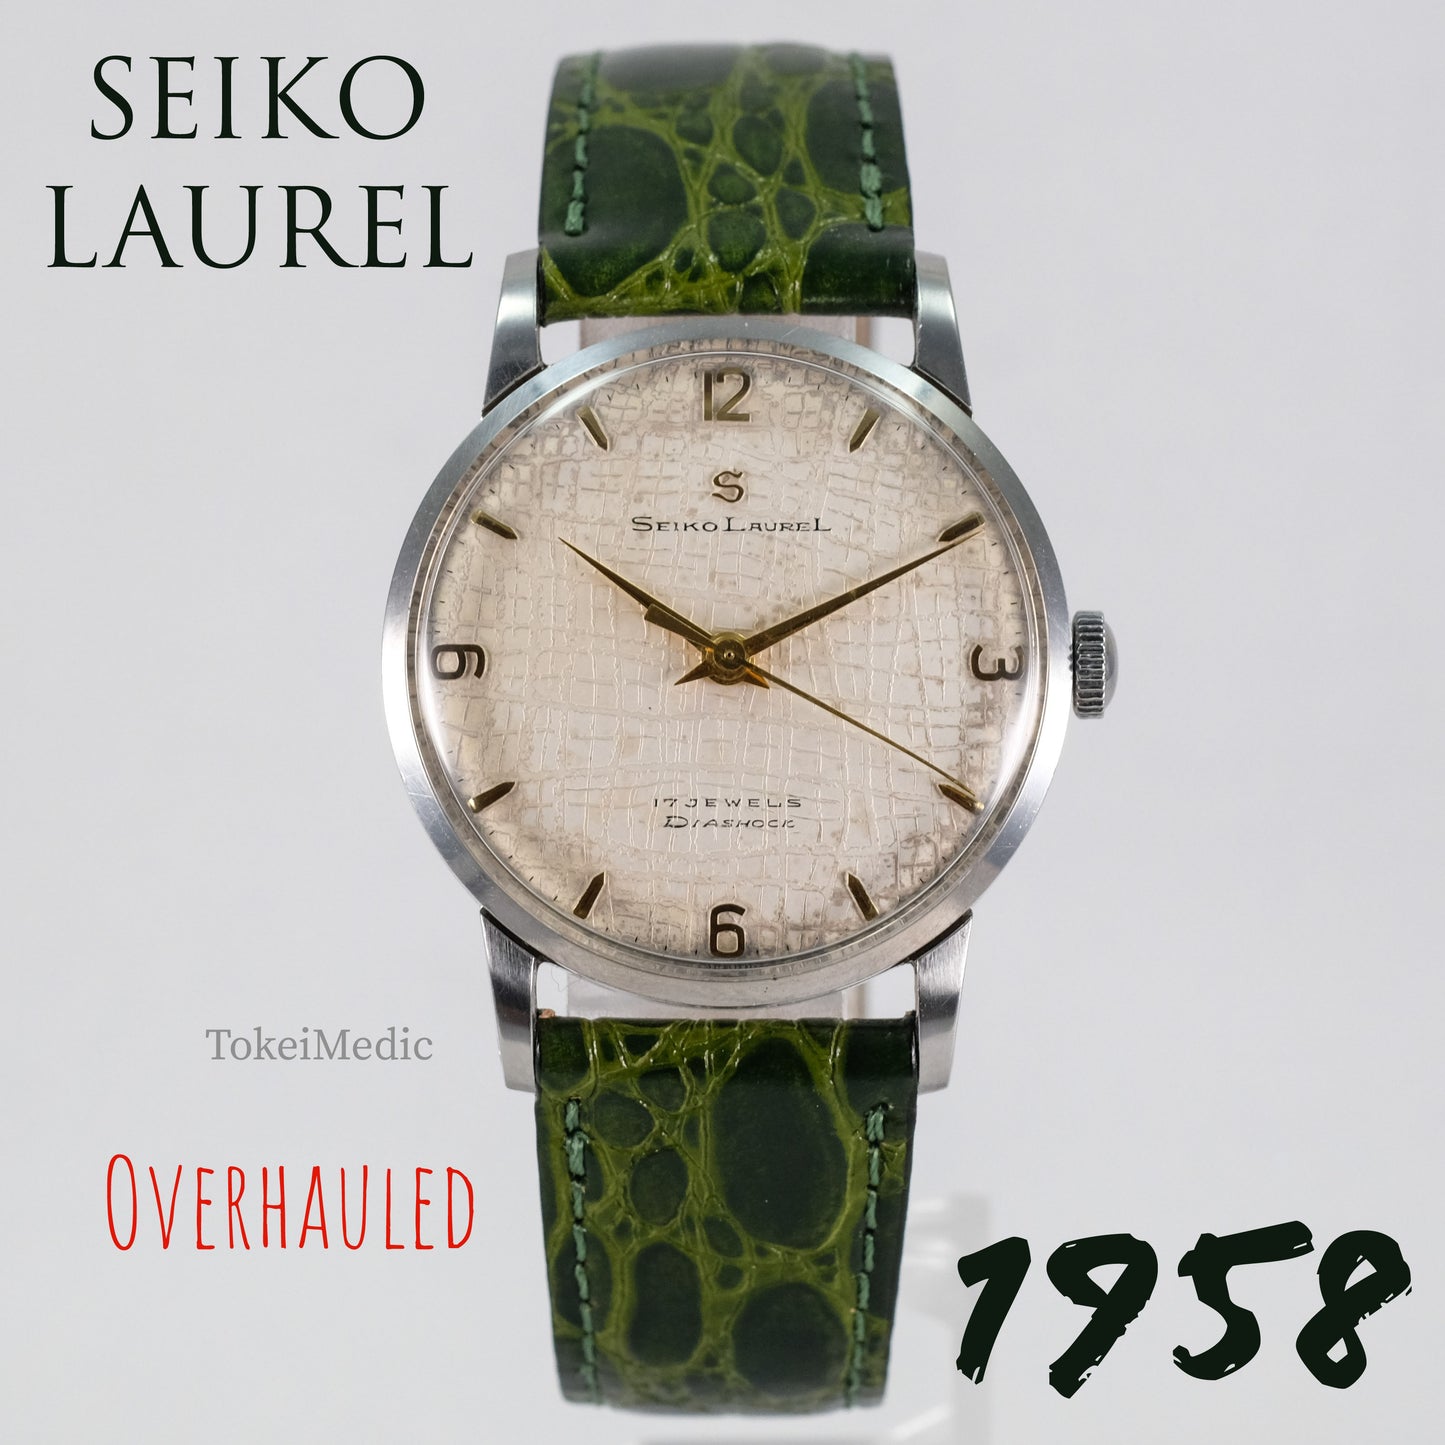 1958 Seiko Laurel 14037